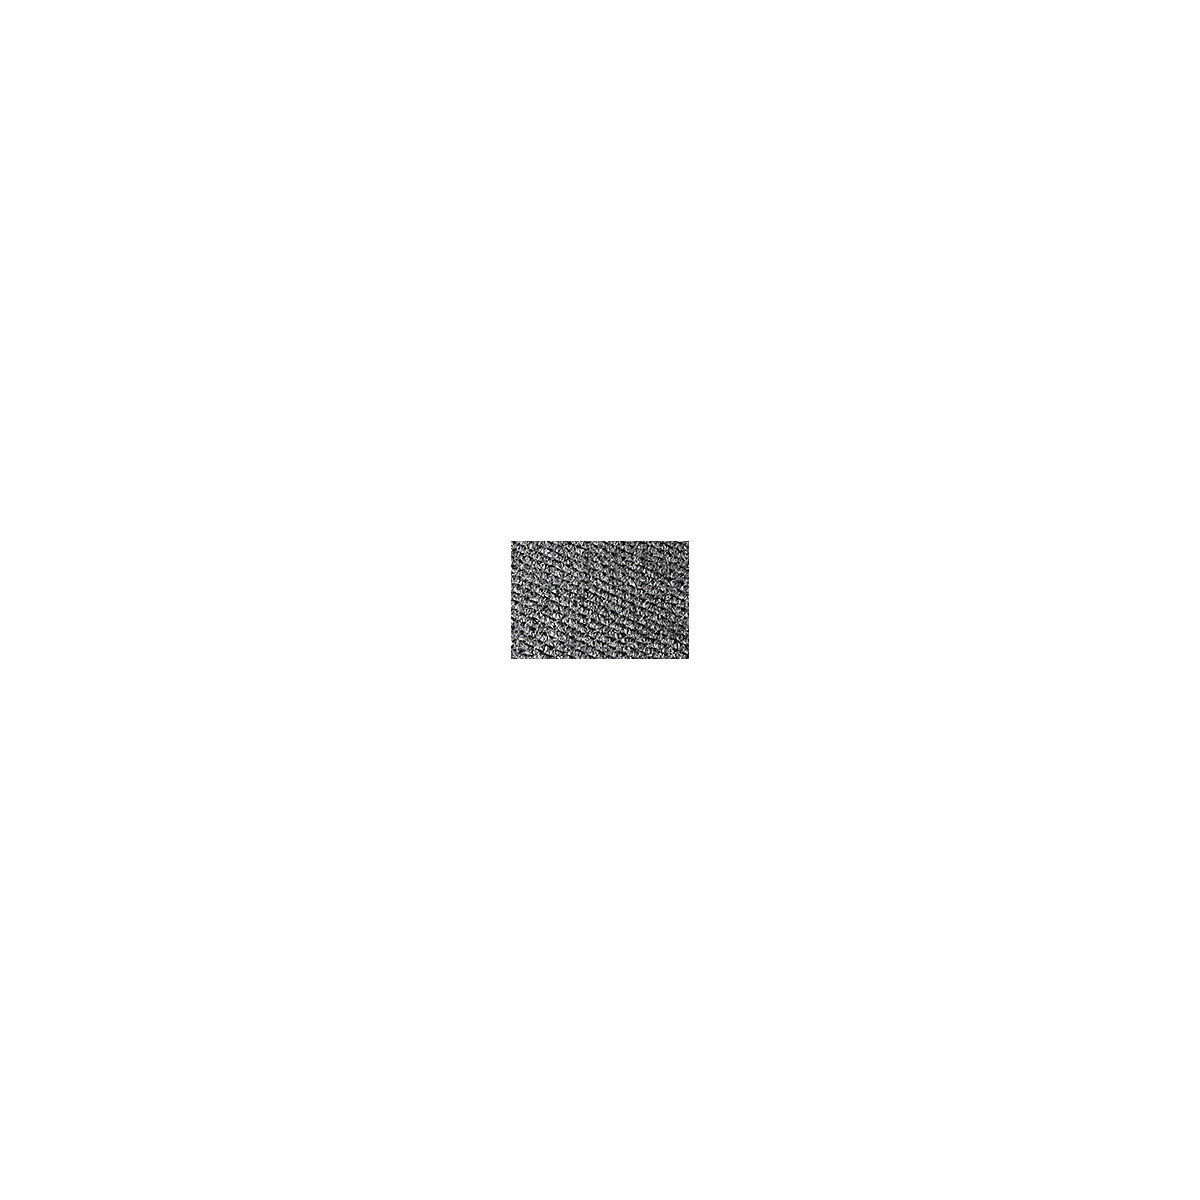 Naaldvilt loper – COBA, breedte 2000 mm, per str. m, antraciet-3